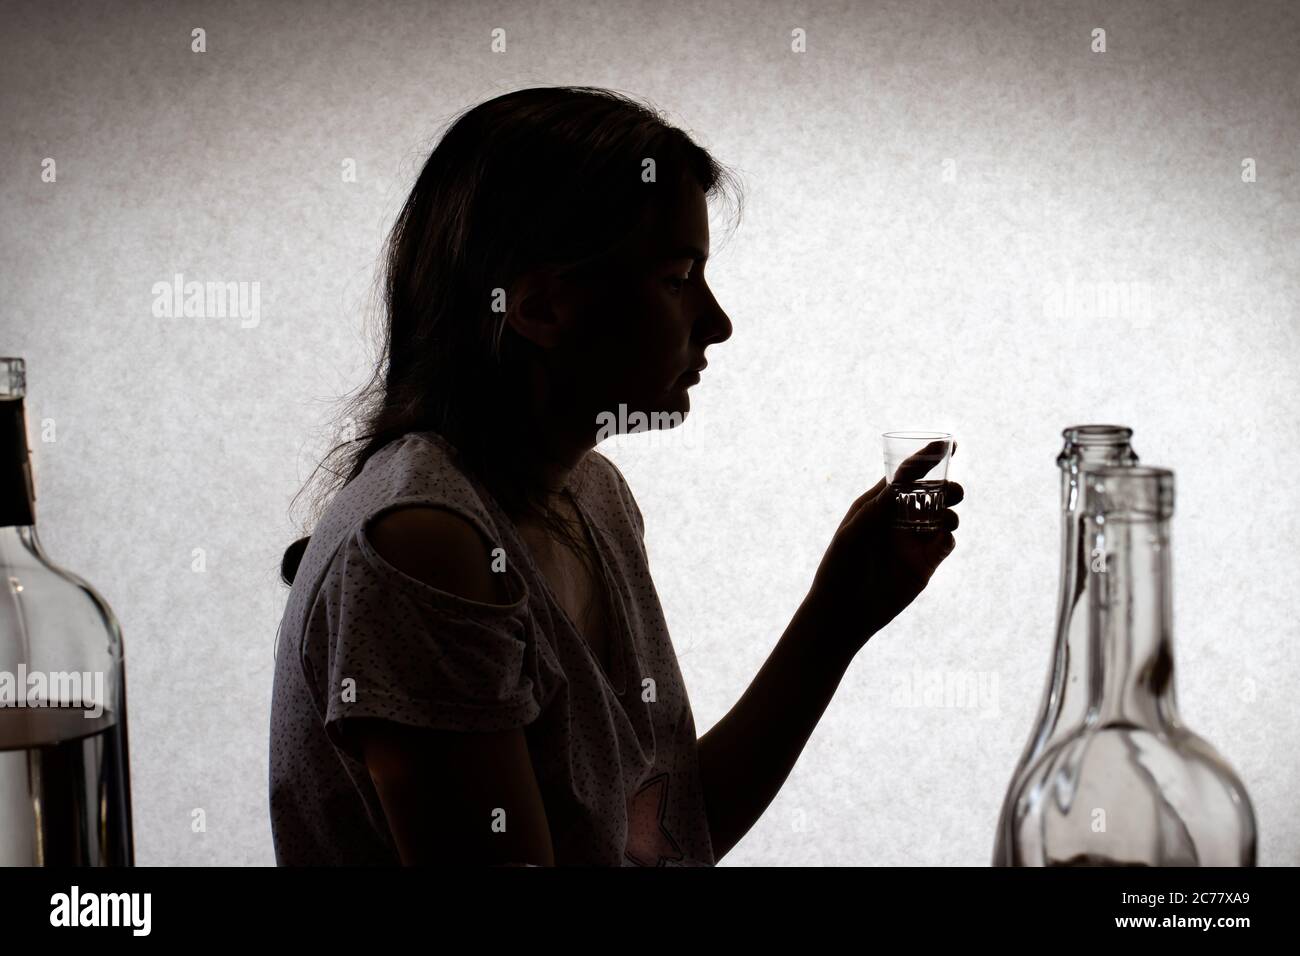 Frau hält ein Glas mit starkem Alkohol. Weiblicher Alkoholismus, Alkoholabhängigkeit, Delirium tremens. Silhouette Foto. Stockfoto